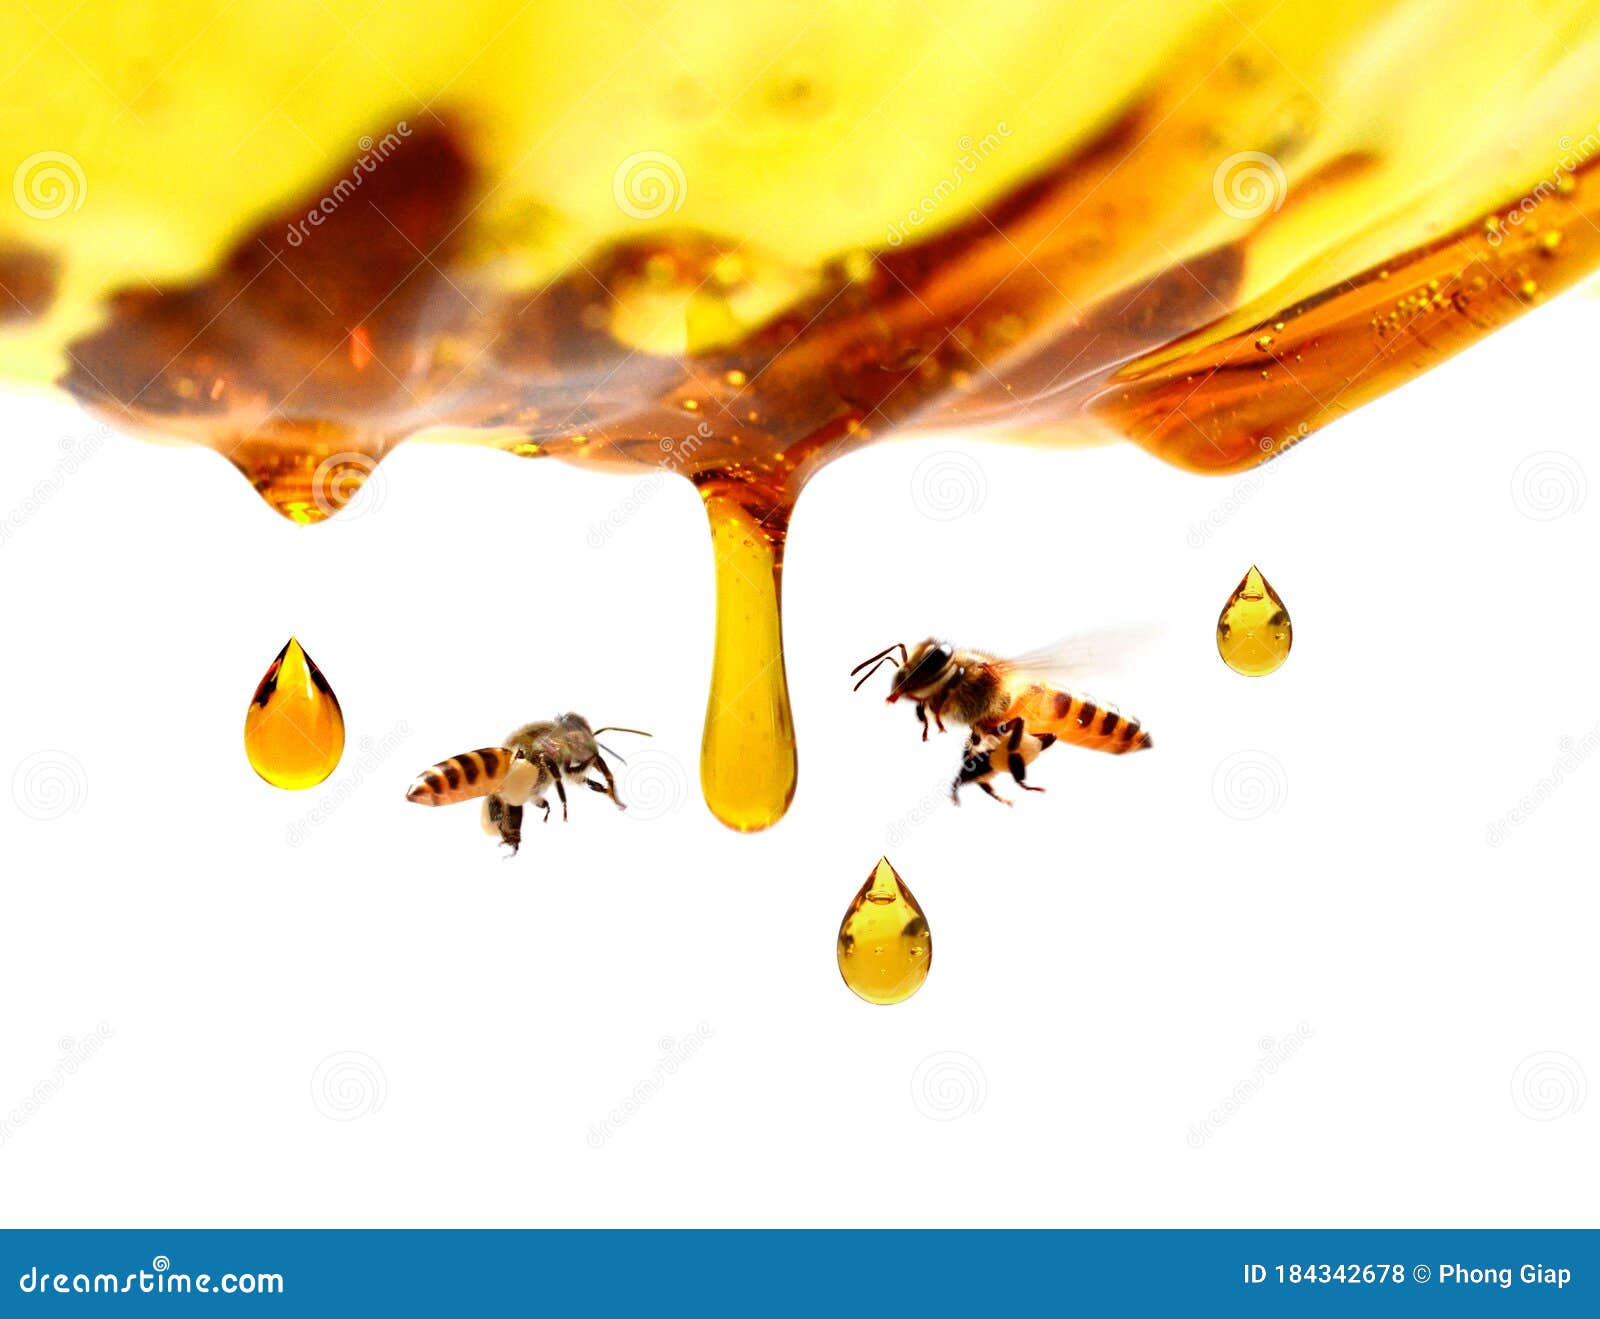 miel en verre avec l`abeille.